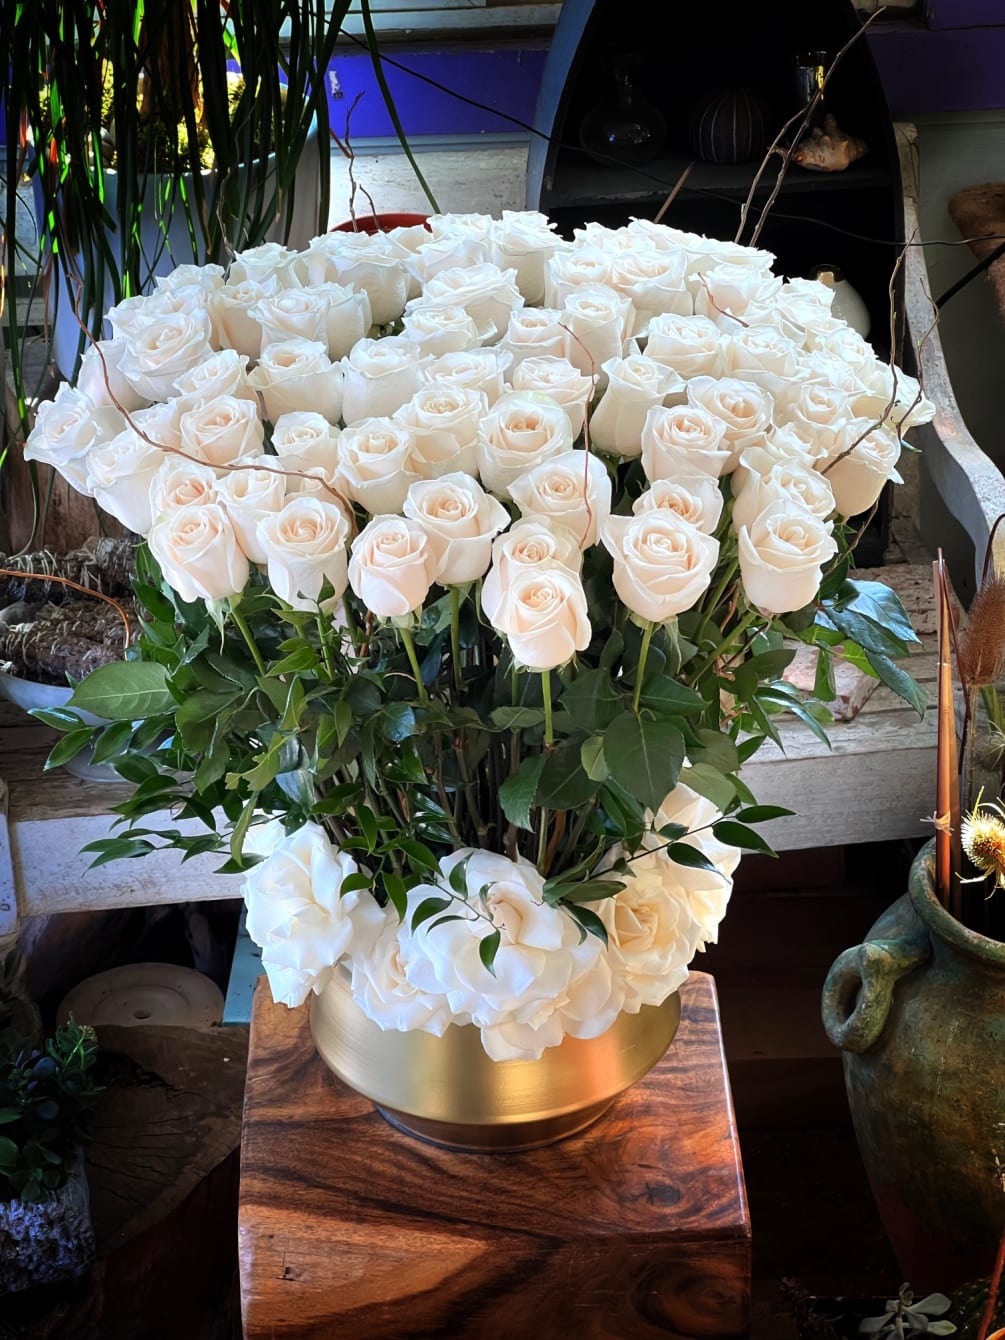 100 White Premium Ecuadorian Roses in Gold Metal Vase. 
(Available in different